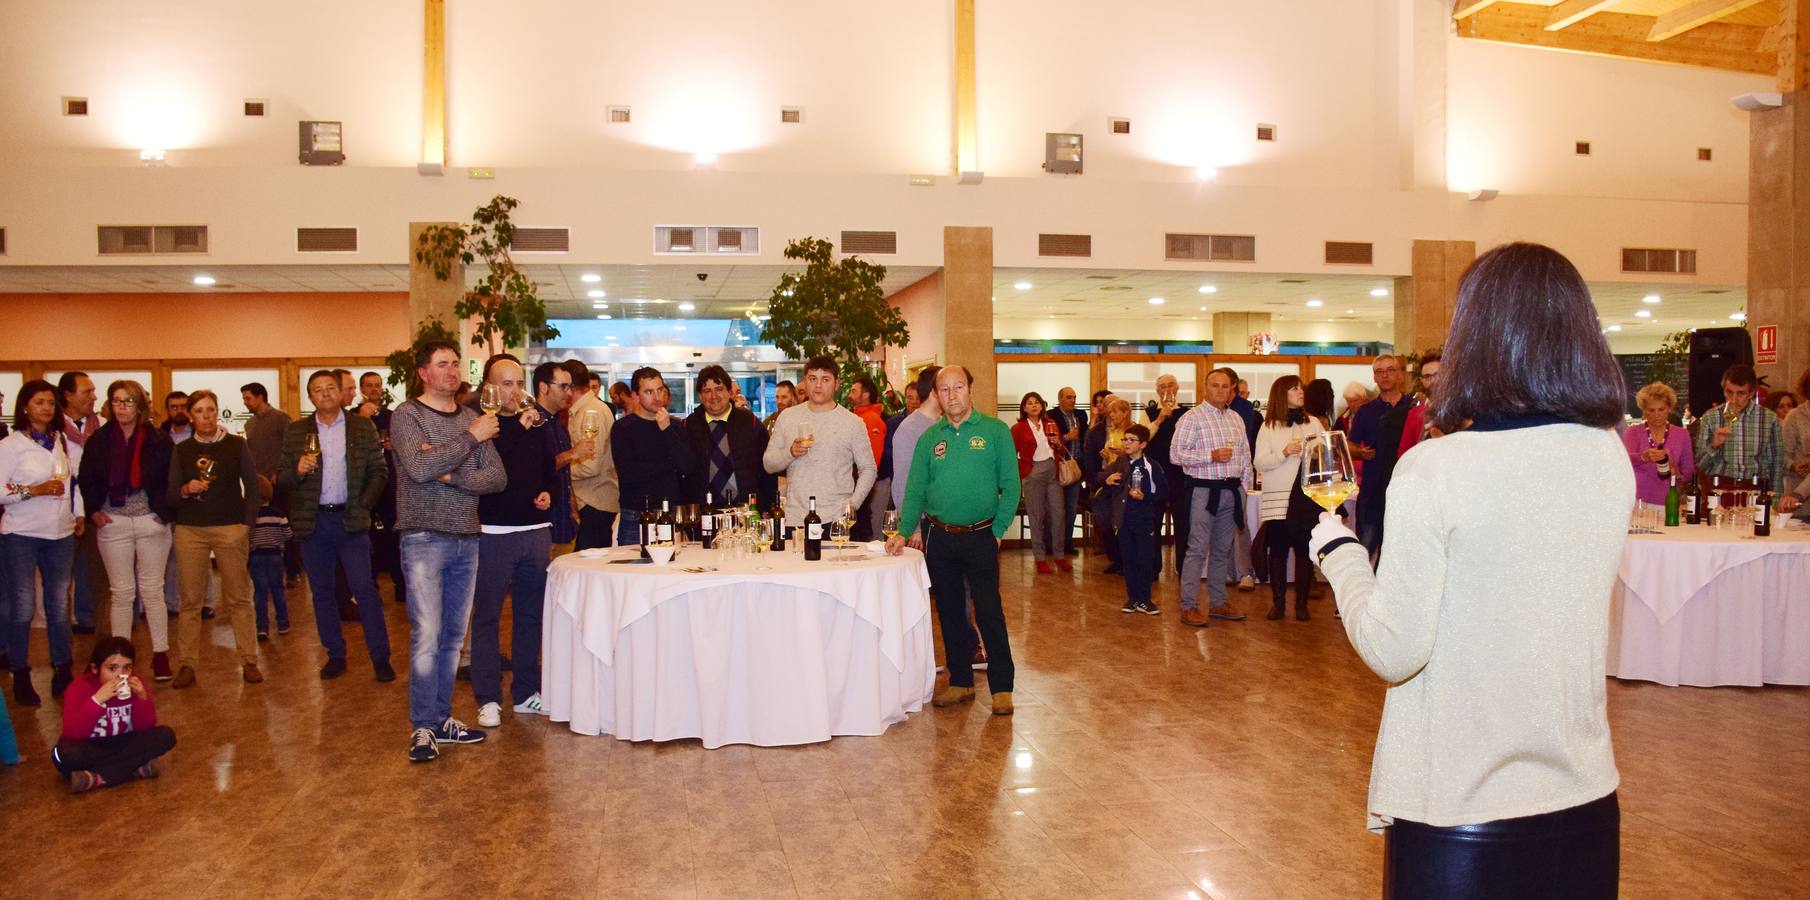 Tras la jornada de juego, los participantes disfrutaron de una cata de los vinos de Finca Valpiedra.